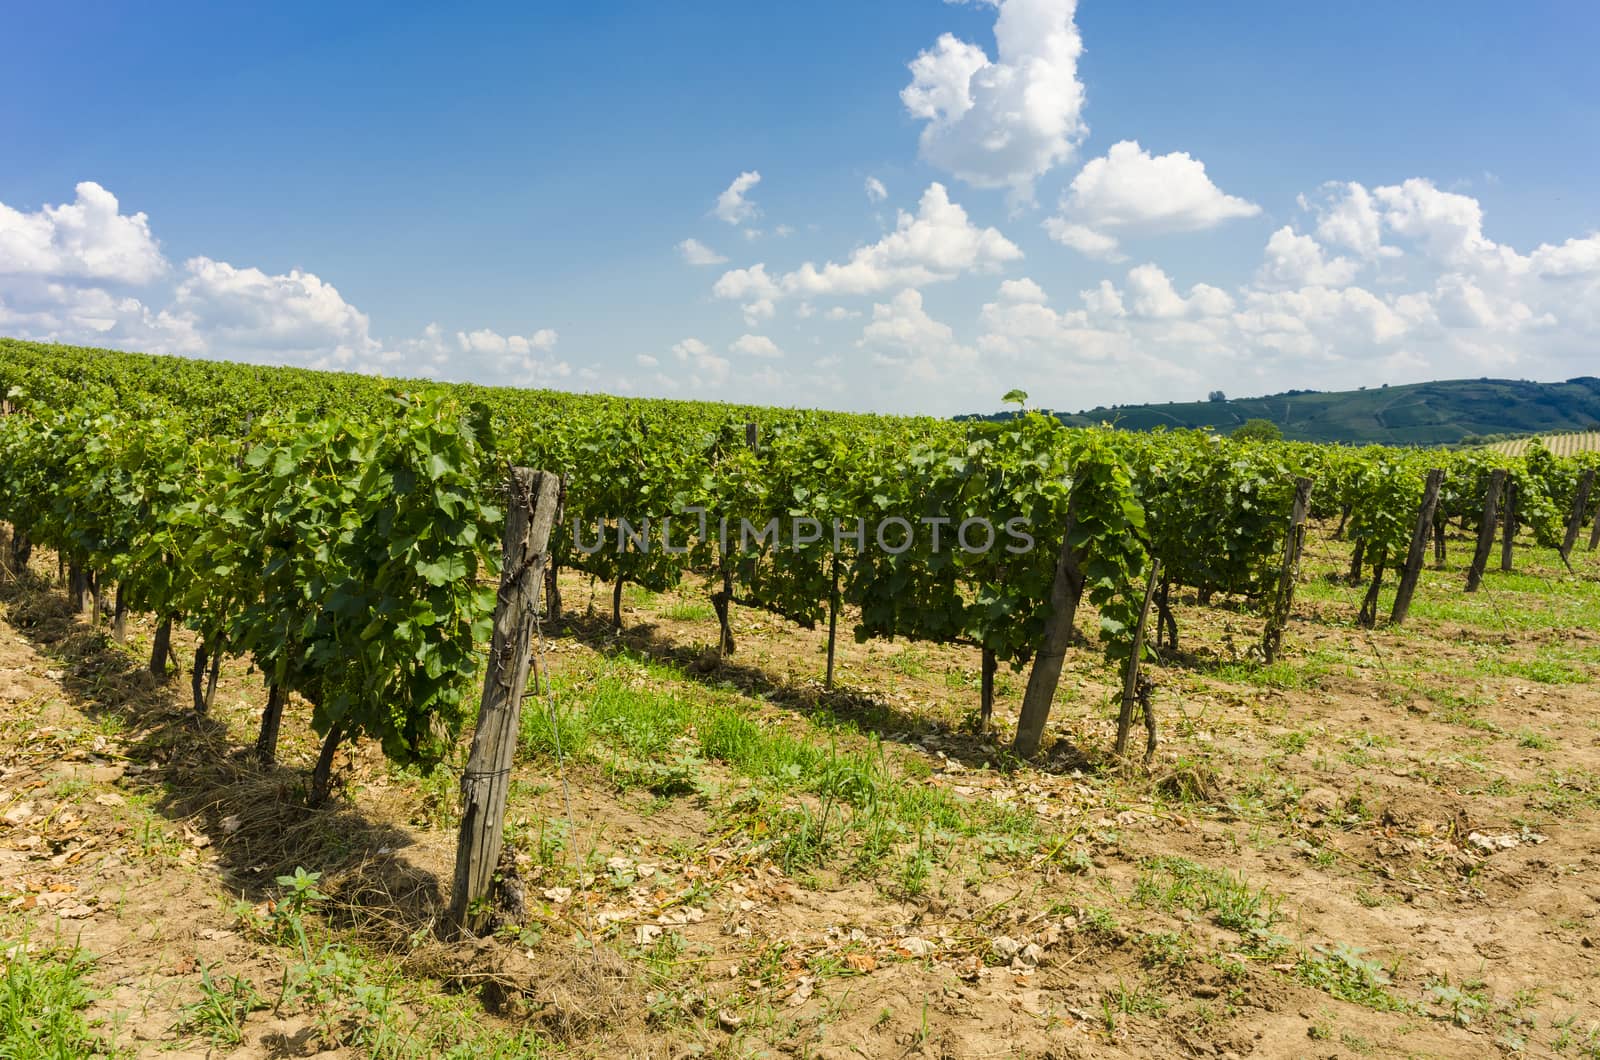 Vineyard by fyletto